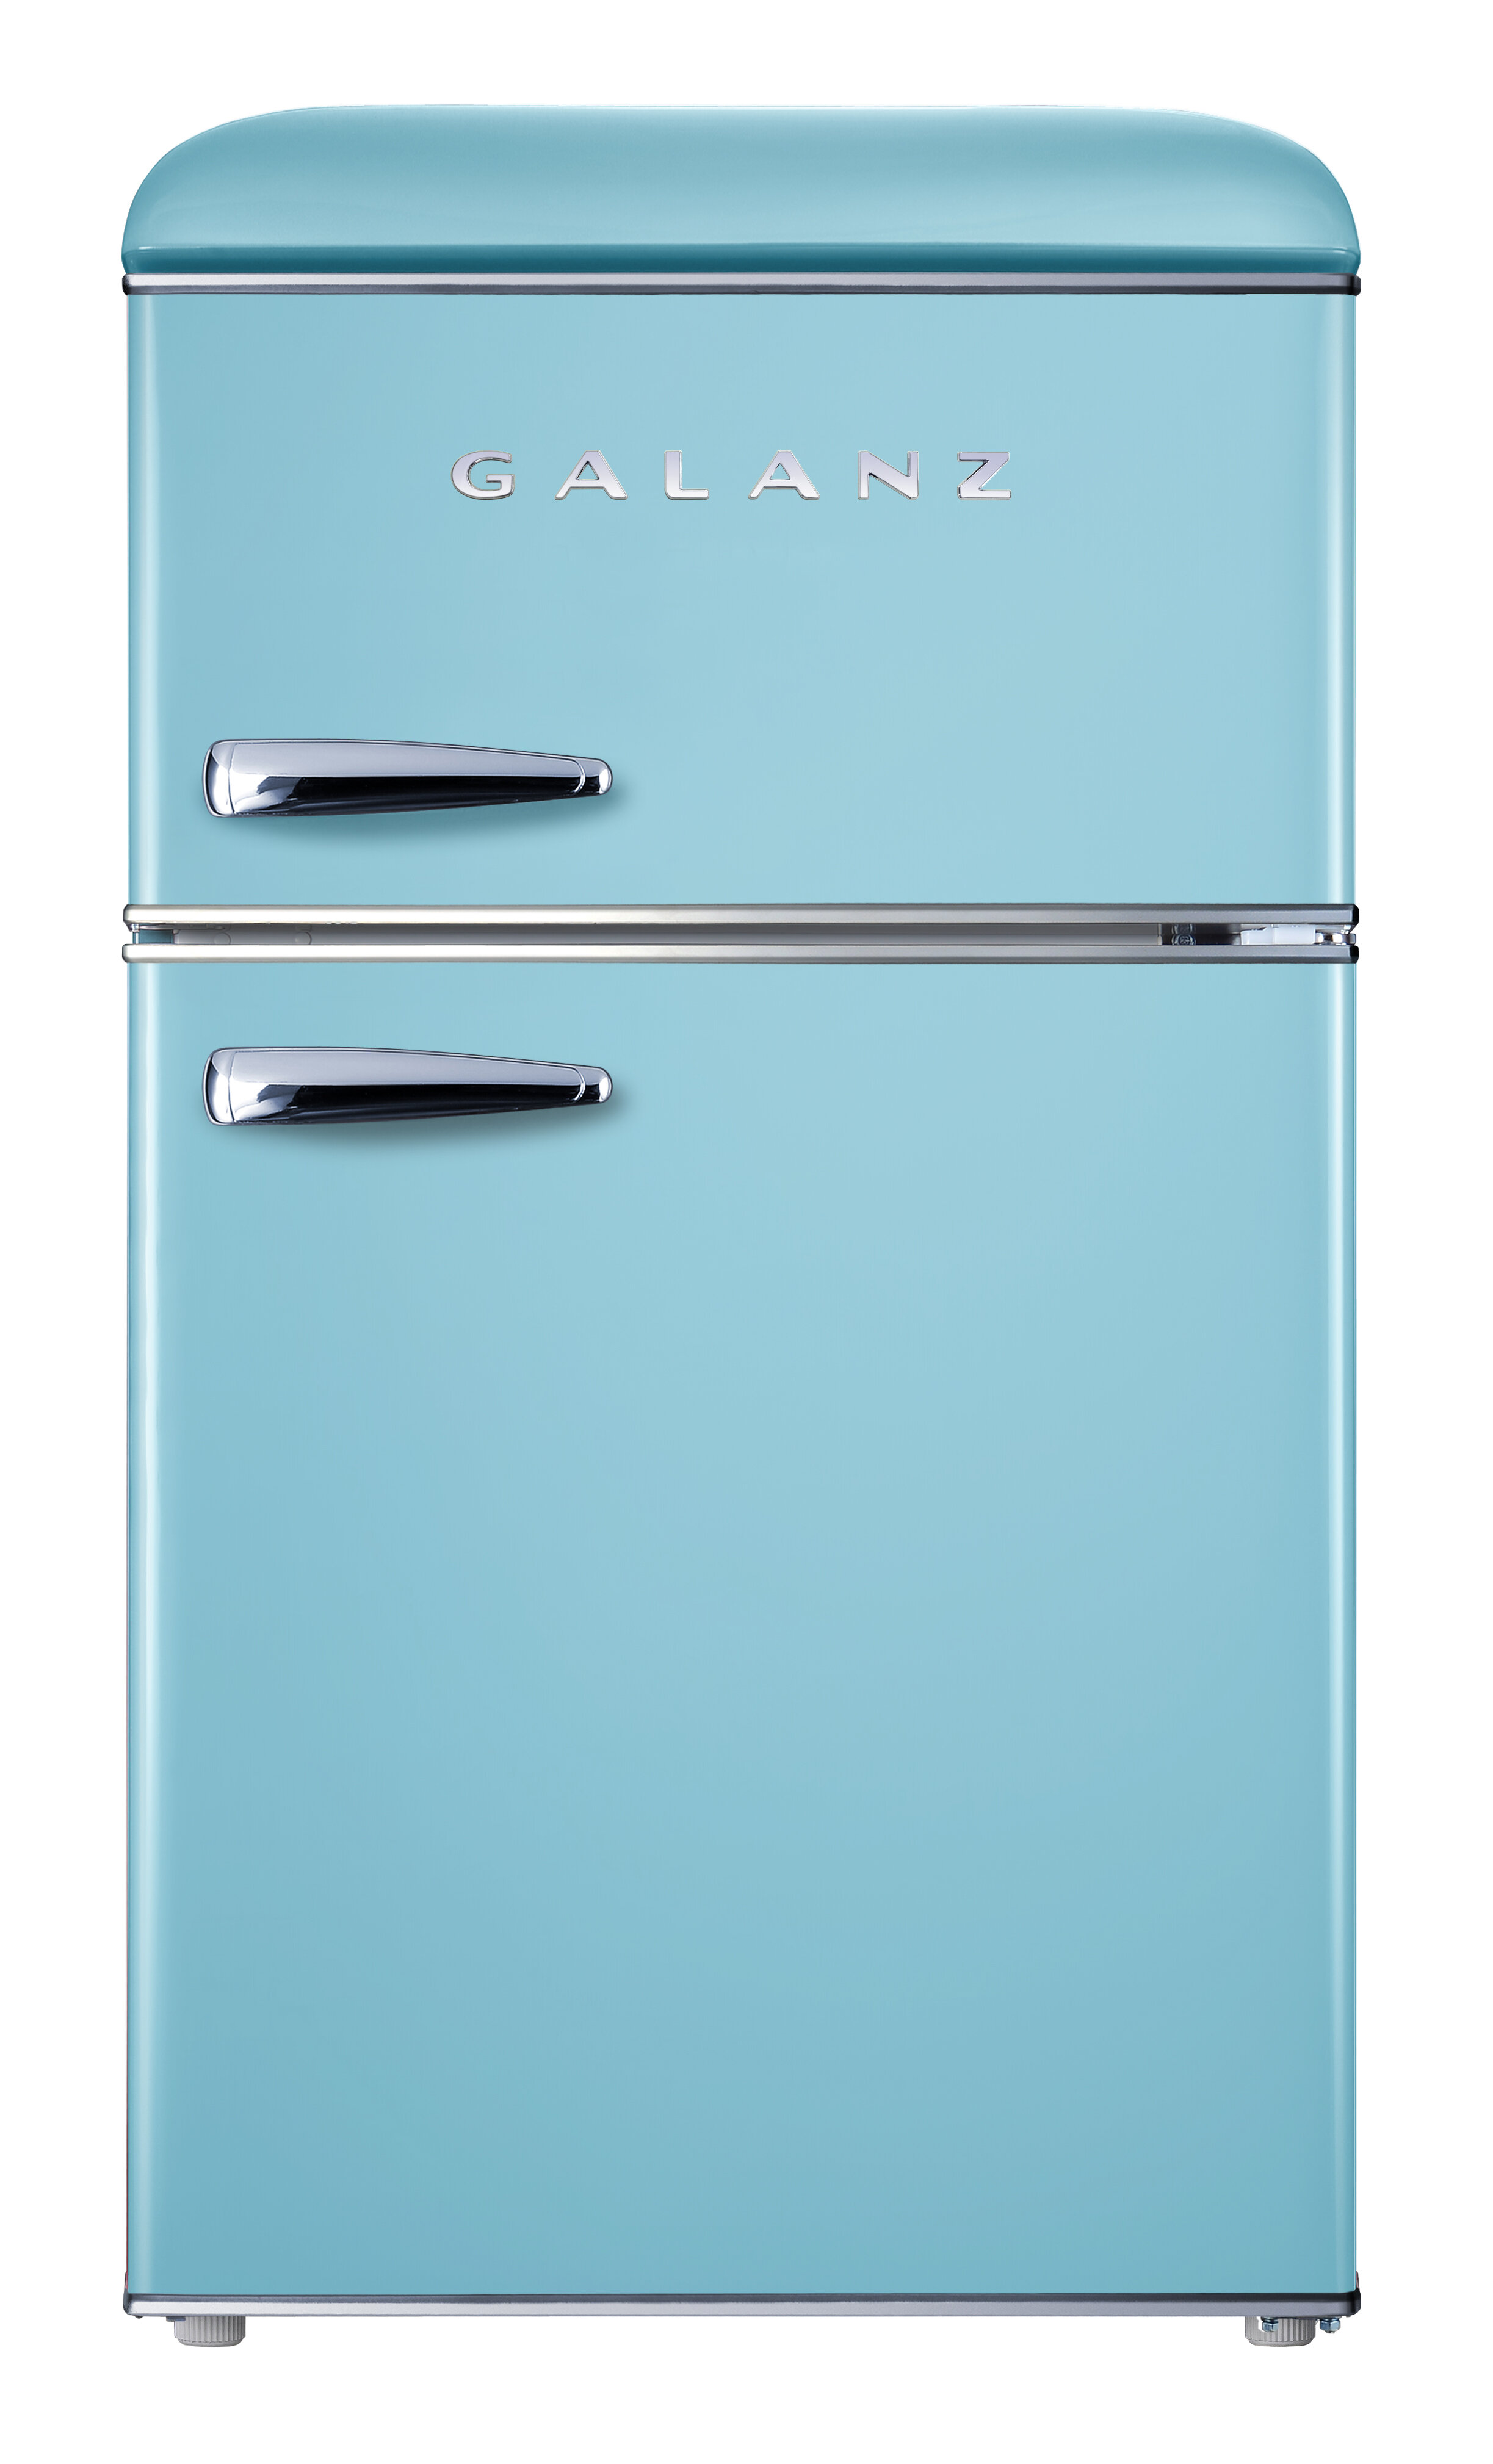 24++ Consumer reports retro fridge ideas in 2021 